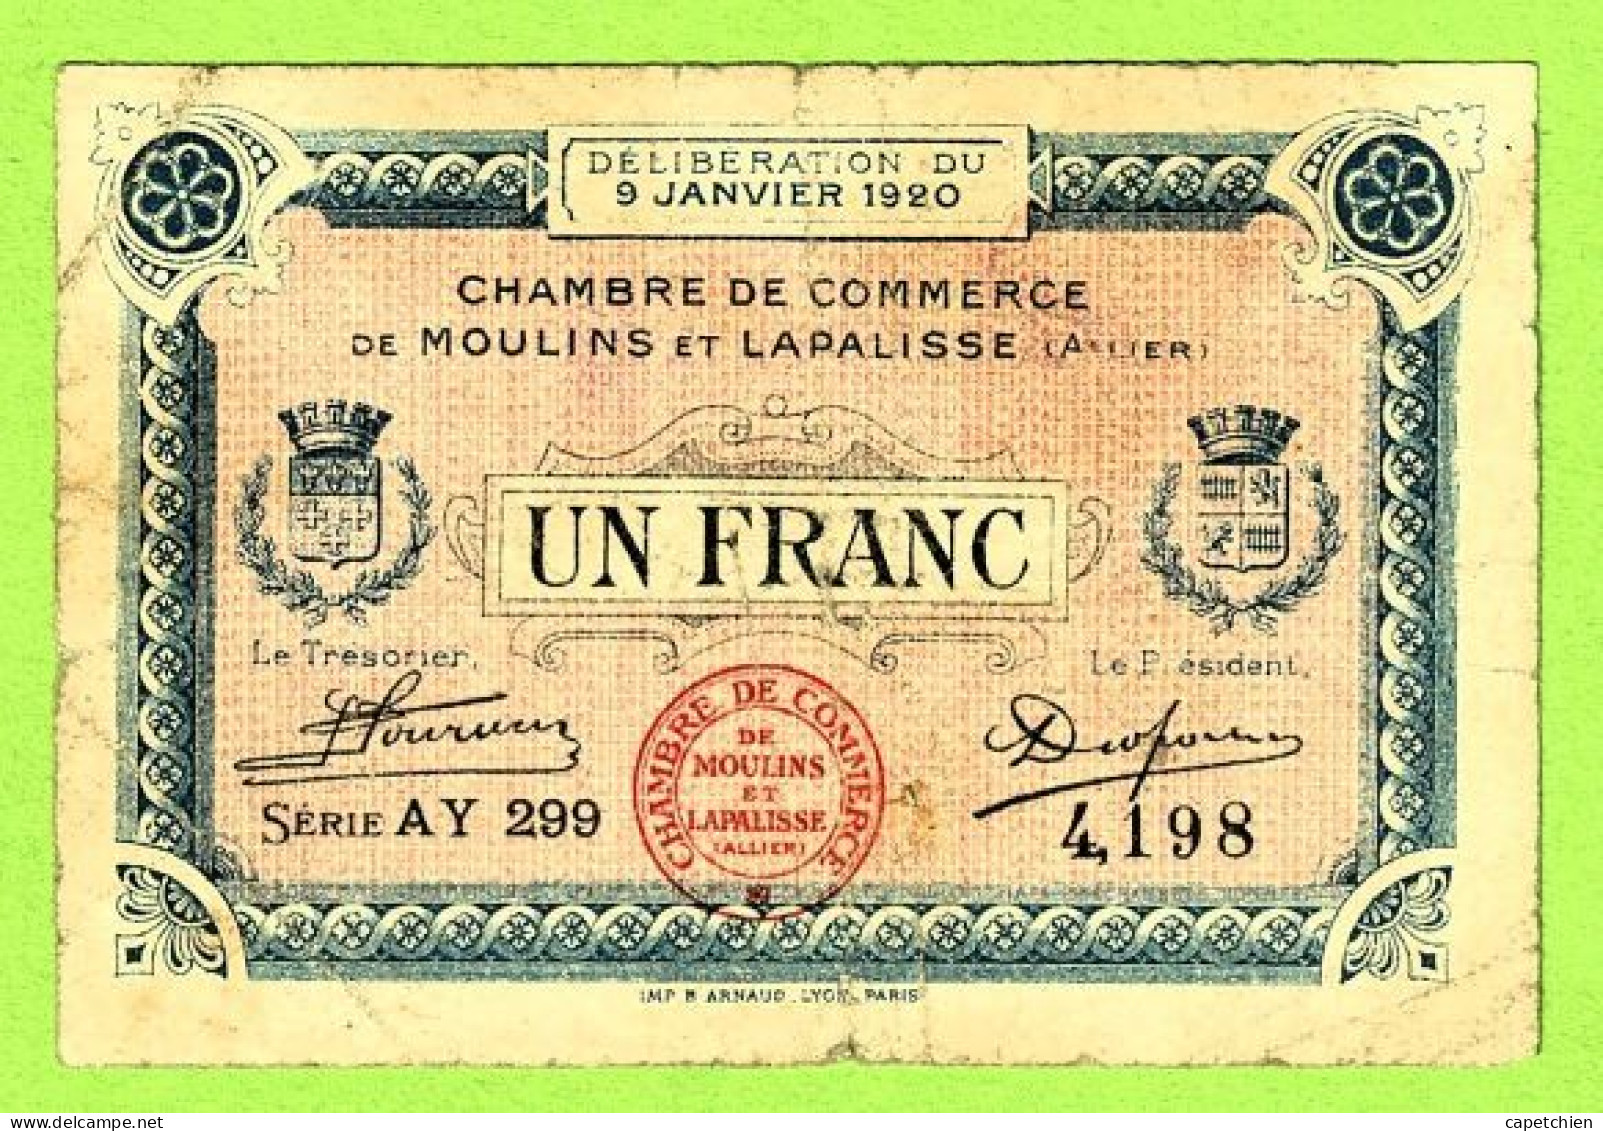 FRANCE /  CHAMBRE De COMMERCE De MOULINS & LAPALISSE / 1 FRANC / 9 JANVIER 1920  N° 4,198 / SERIE AY 299 - Chambre De Commerce